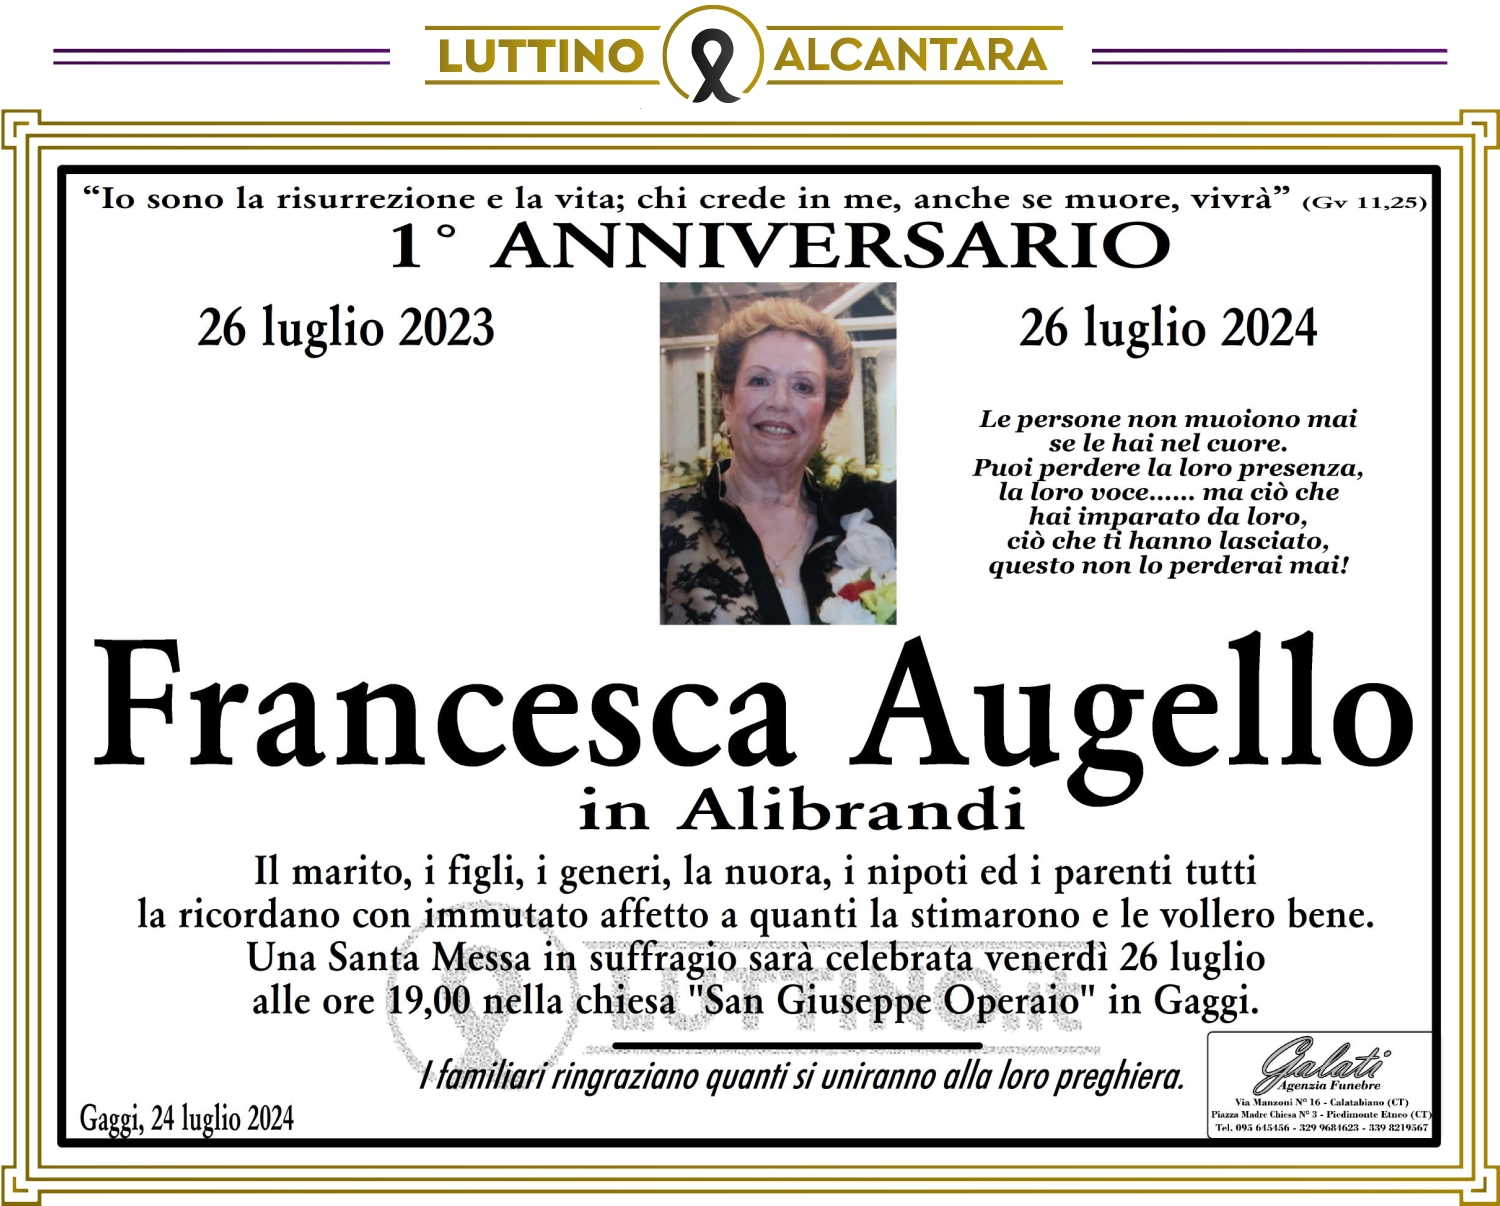 Francesca Augello